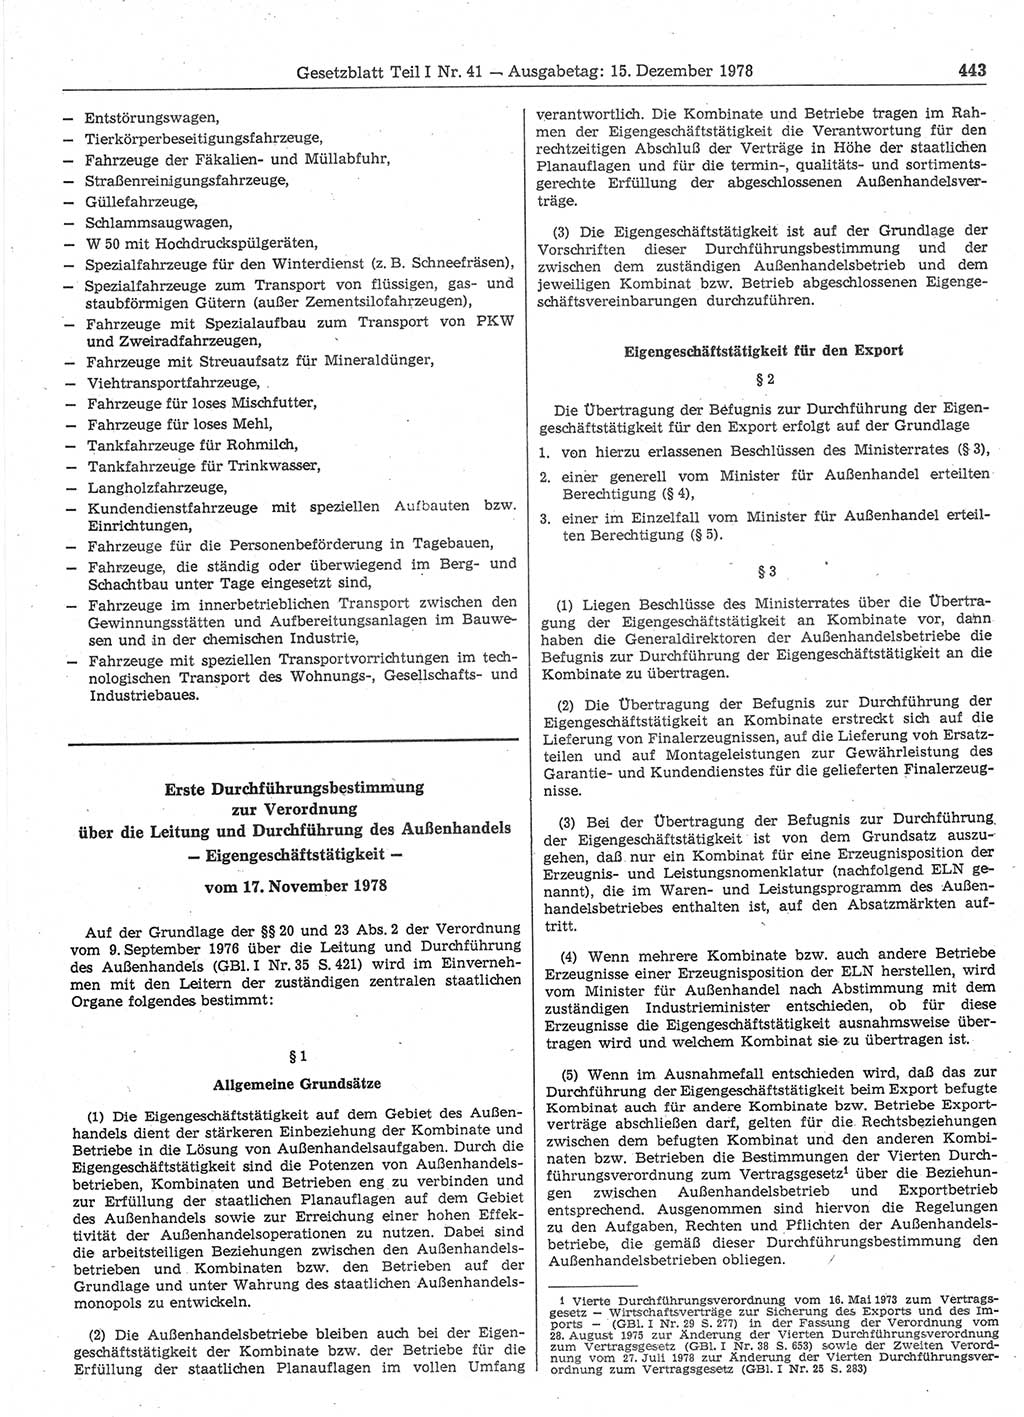 Gesetzblatt (GBl.) der Deutschen Demokratischen Republik (DDR) Teil Ⅰ 1978, Seite 443 (GBl. DDR Ⅰ 1978, S. 443)